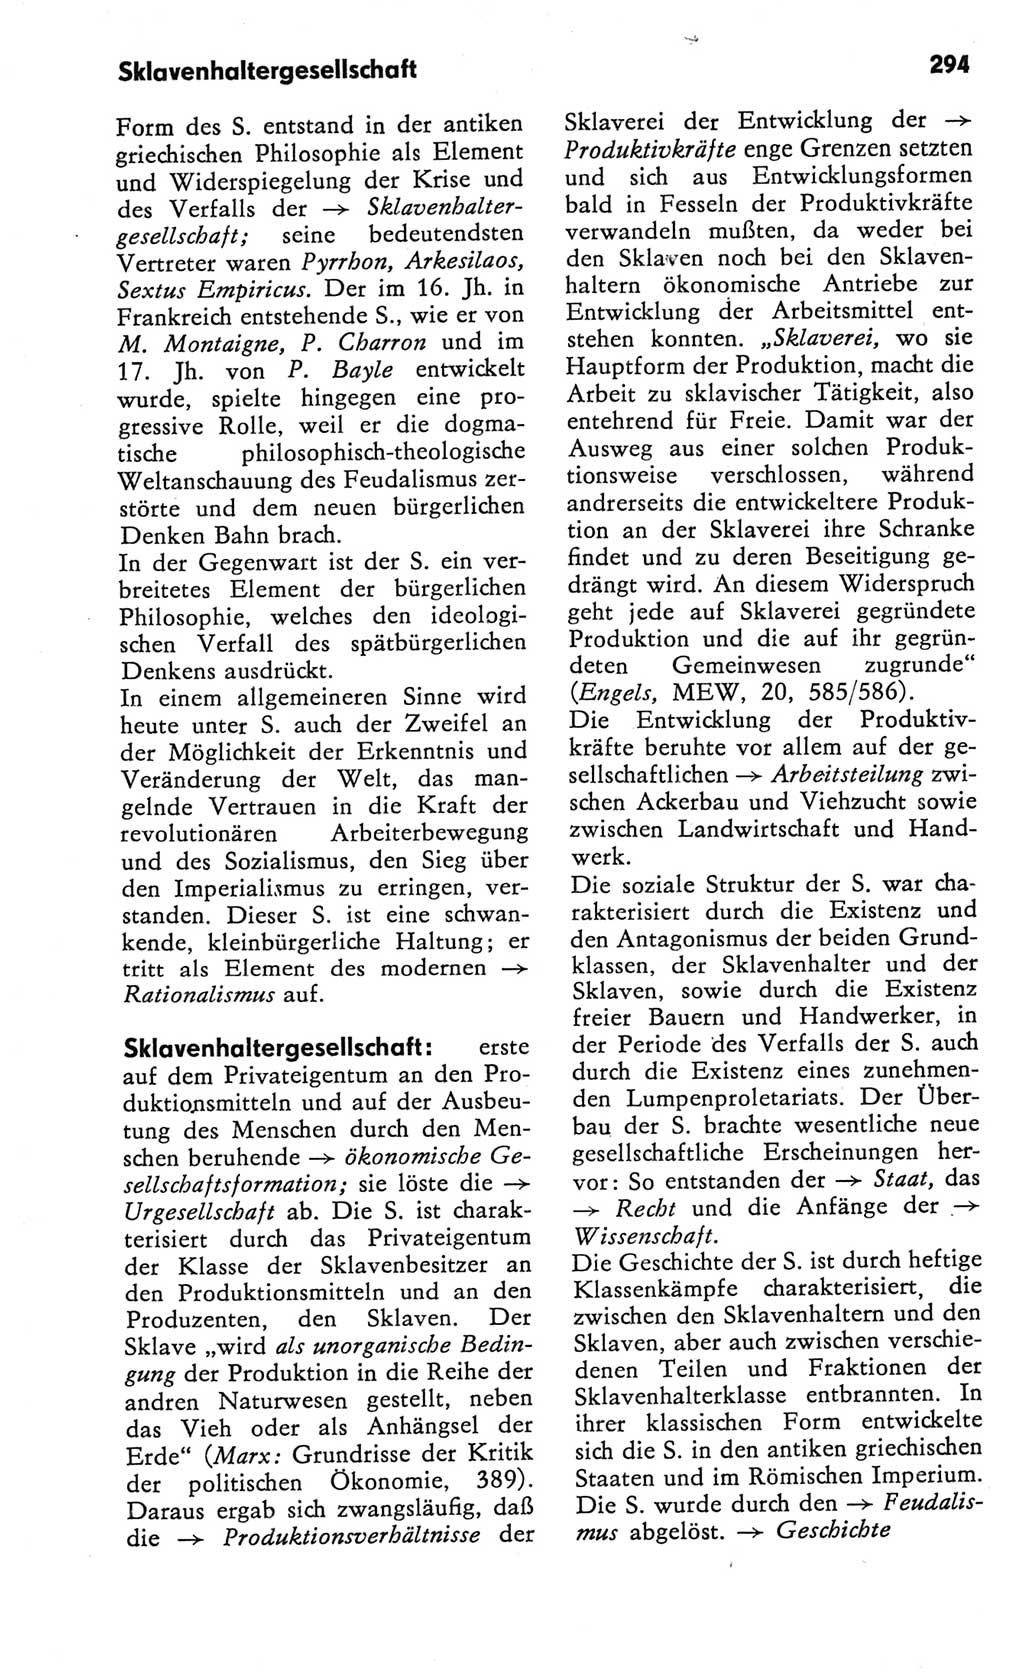 Kleines Wörterbuch der marxistisch-leninistischen Philosophie [Deutsche Demokratische Republik (DDR)] 1982, Seite 294 (Kl. Wb. ML Phil. DDR 1982, S. 294)